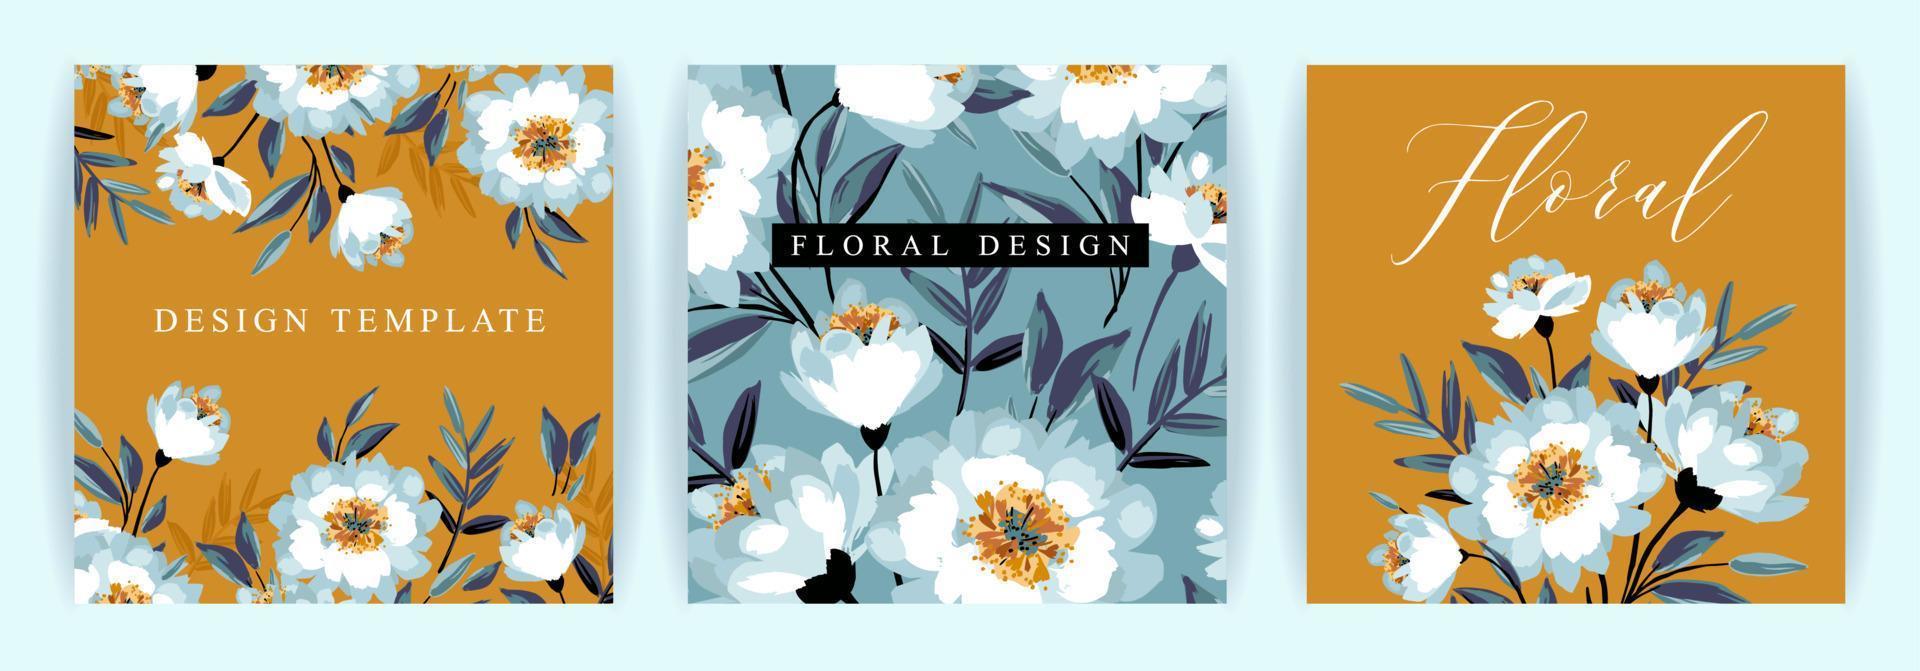 ensemble de motifs floraux vectoriels. modèle pour carte, affiche, dépliant, couverture, décoration intérieure et autre utilisation. vecteur